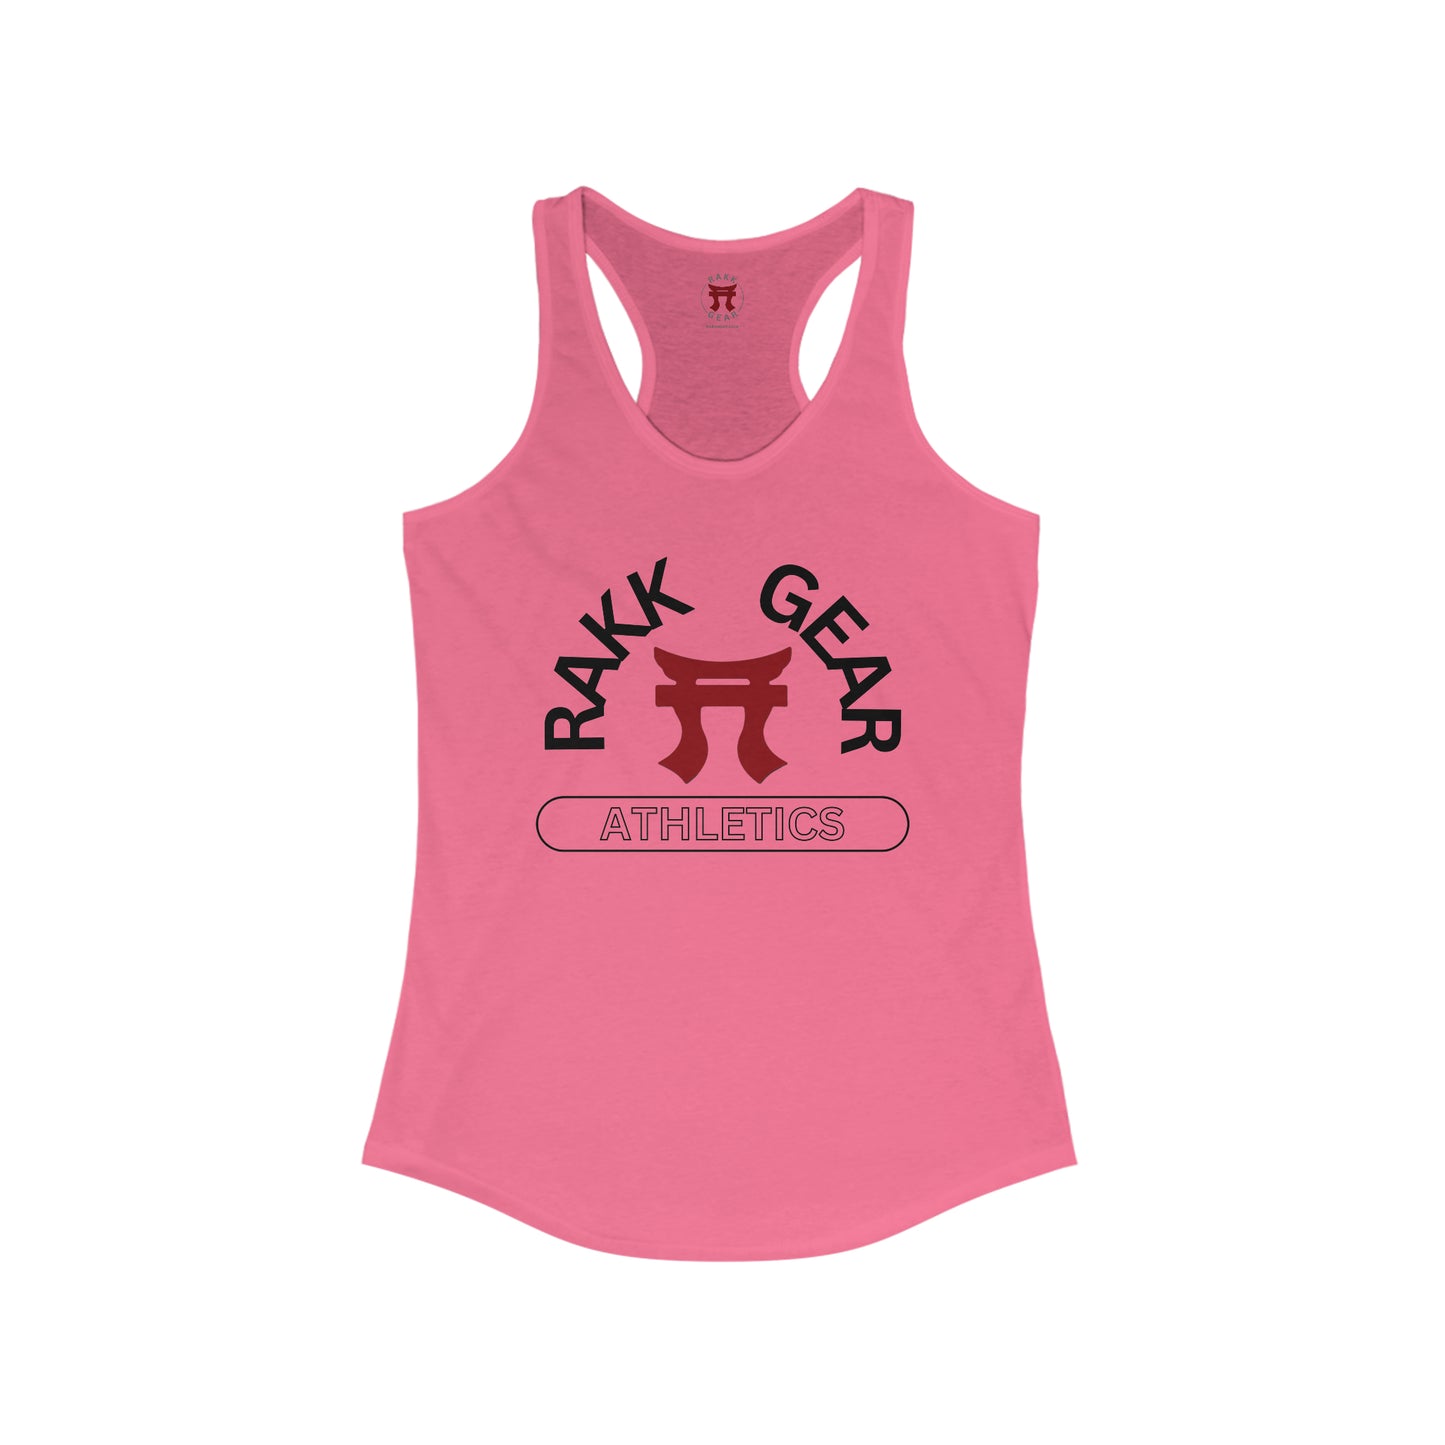 Rakkgear Athletics Women's Racerback Tank Top in hot pink